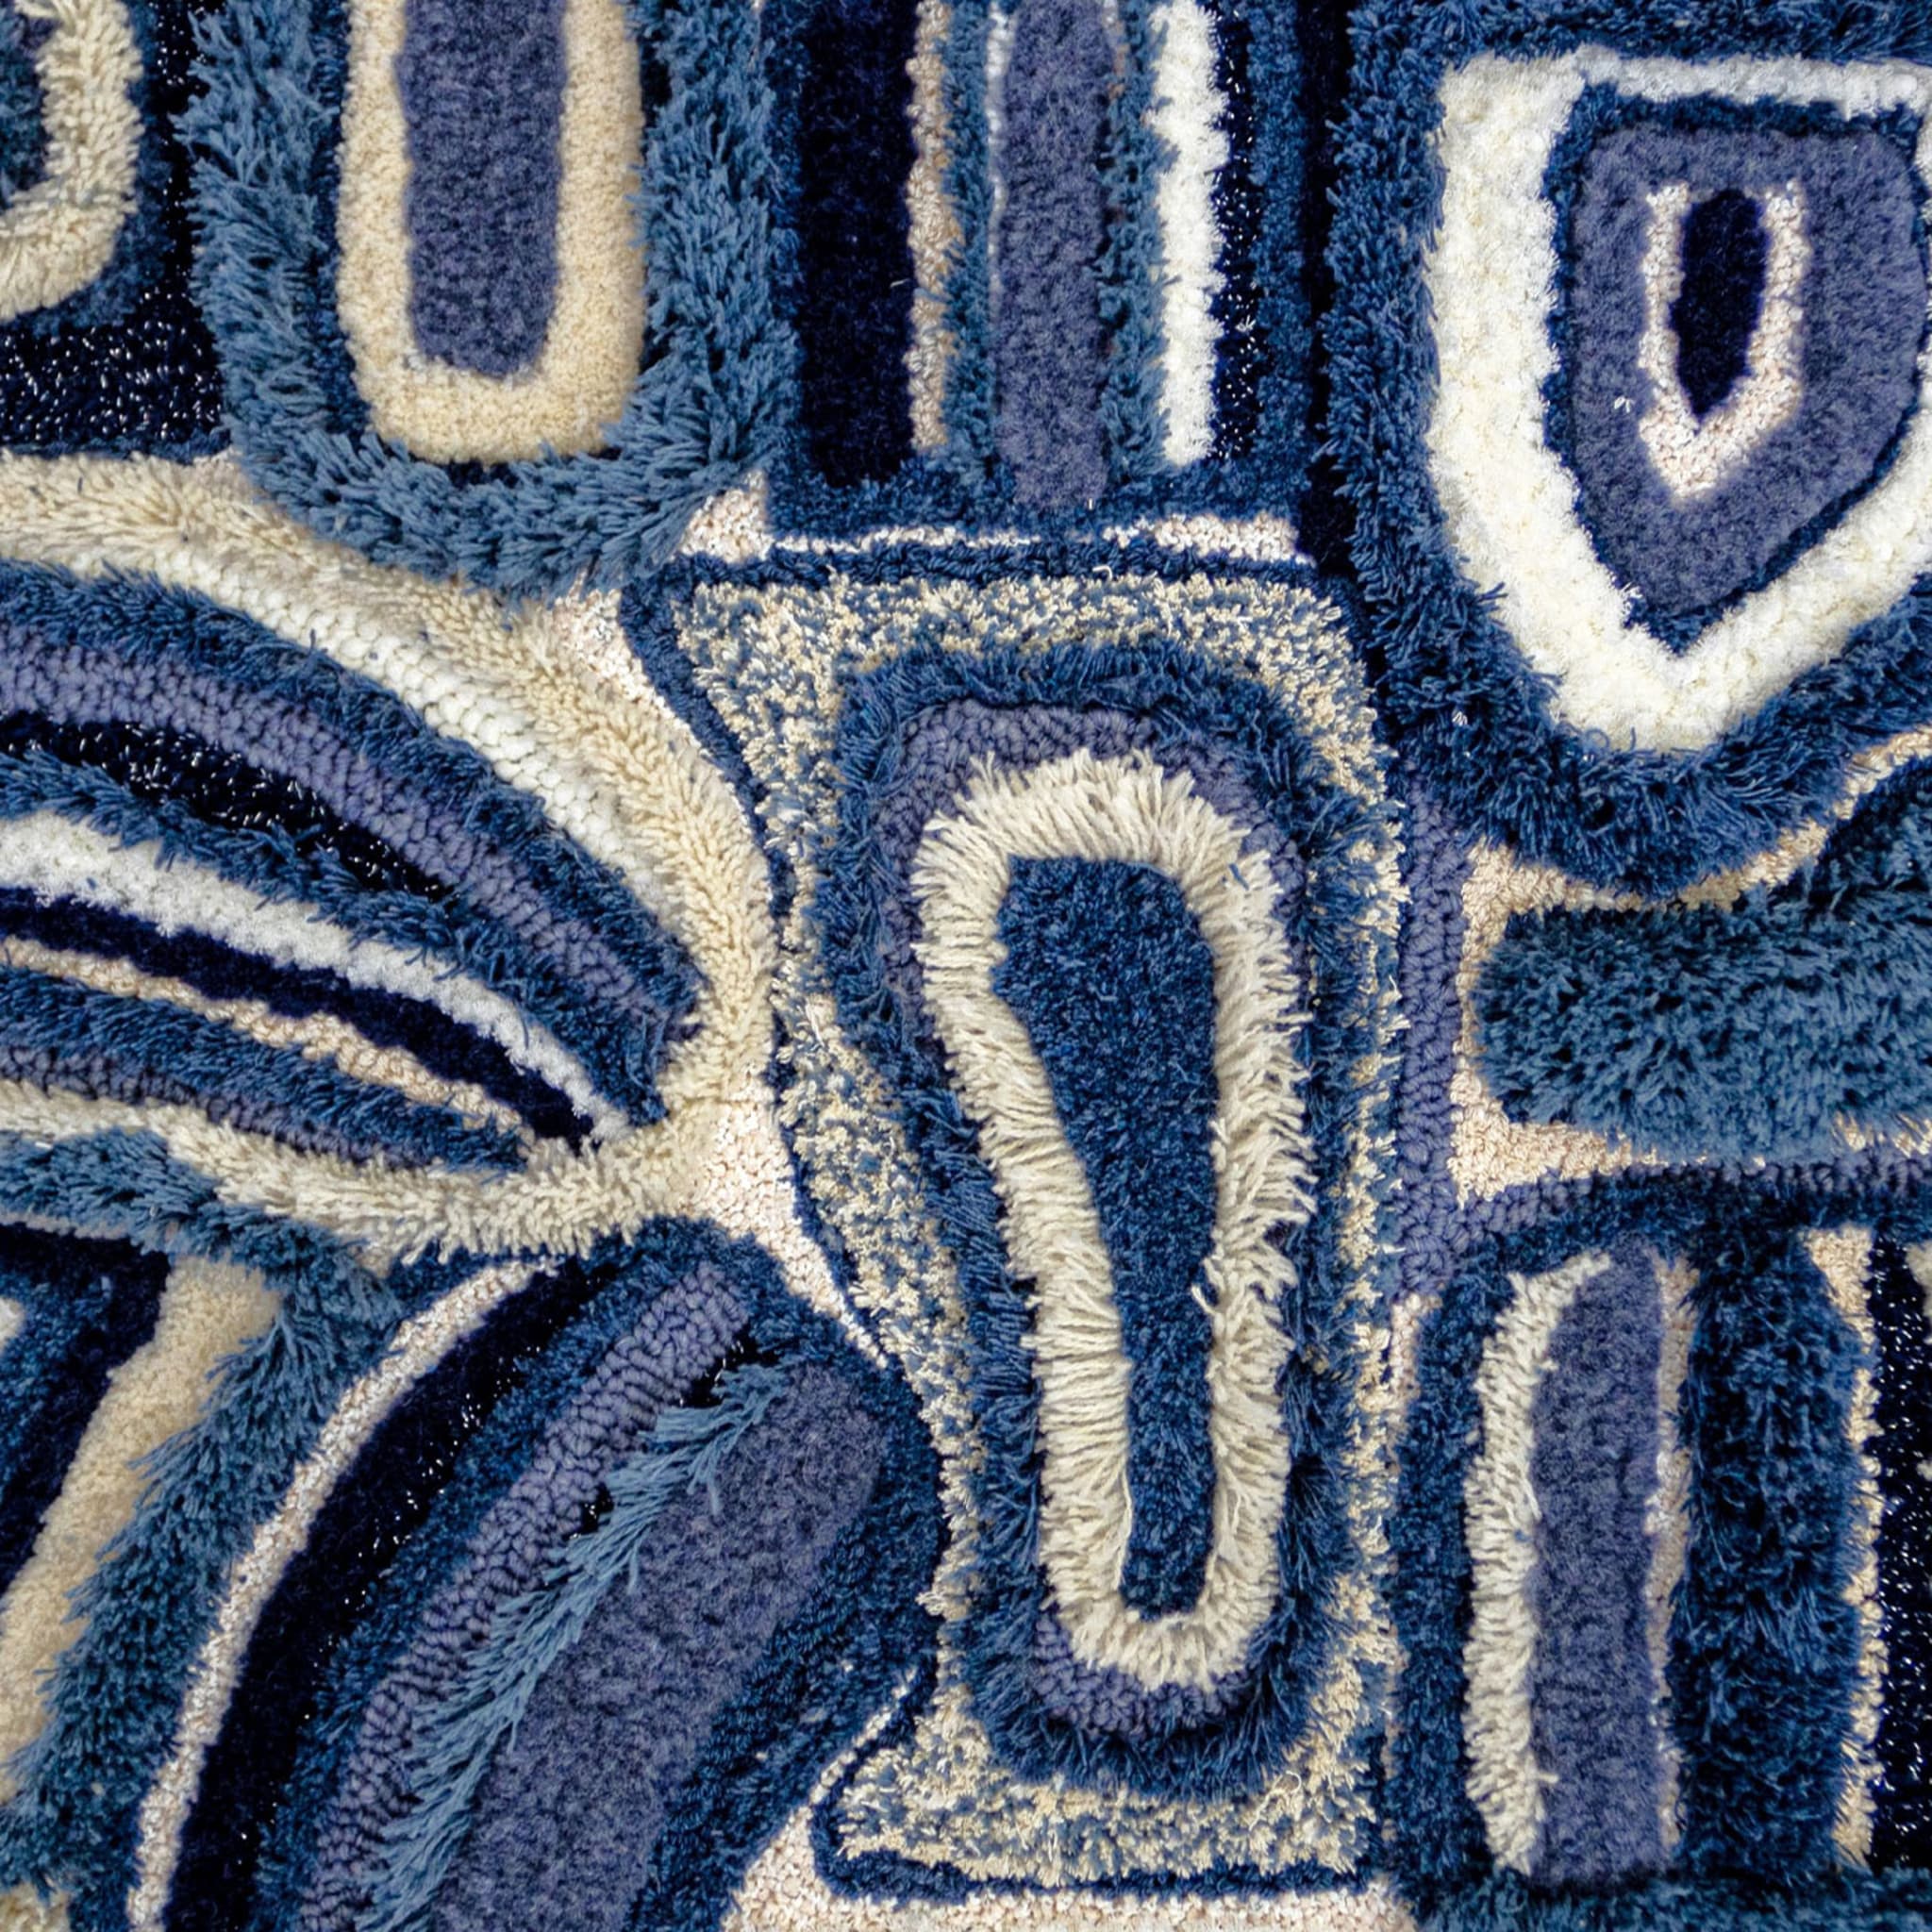  Deconstrucción en tapiz azul de Delft - Vista alternativa 1